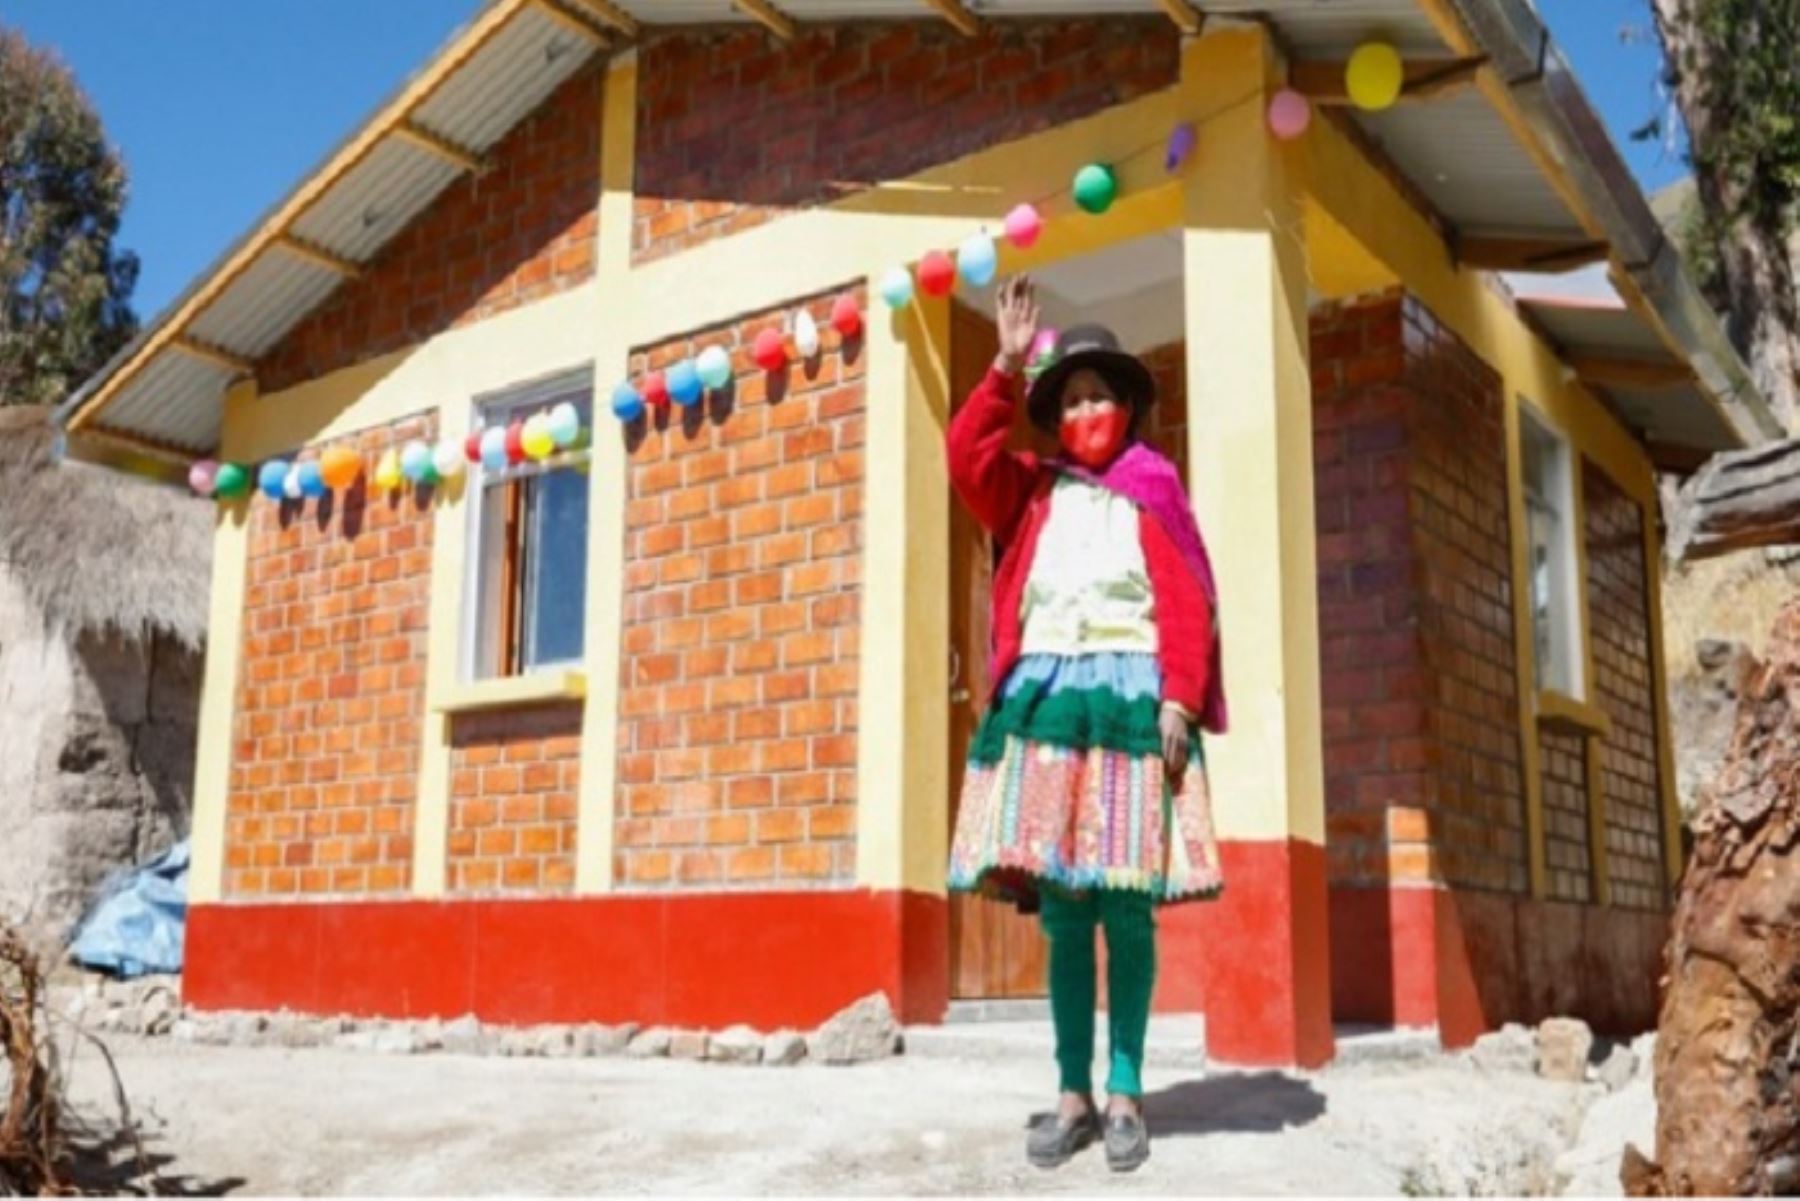 Las casitas bioclimáticas Sumaq Wasi se construirán en centros poblados de Chucuito, Huancané, Moho y Carabaya.